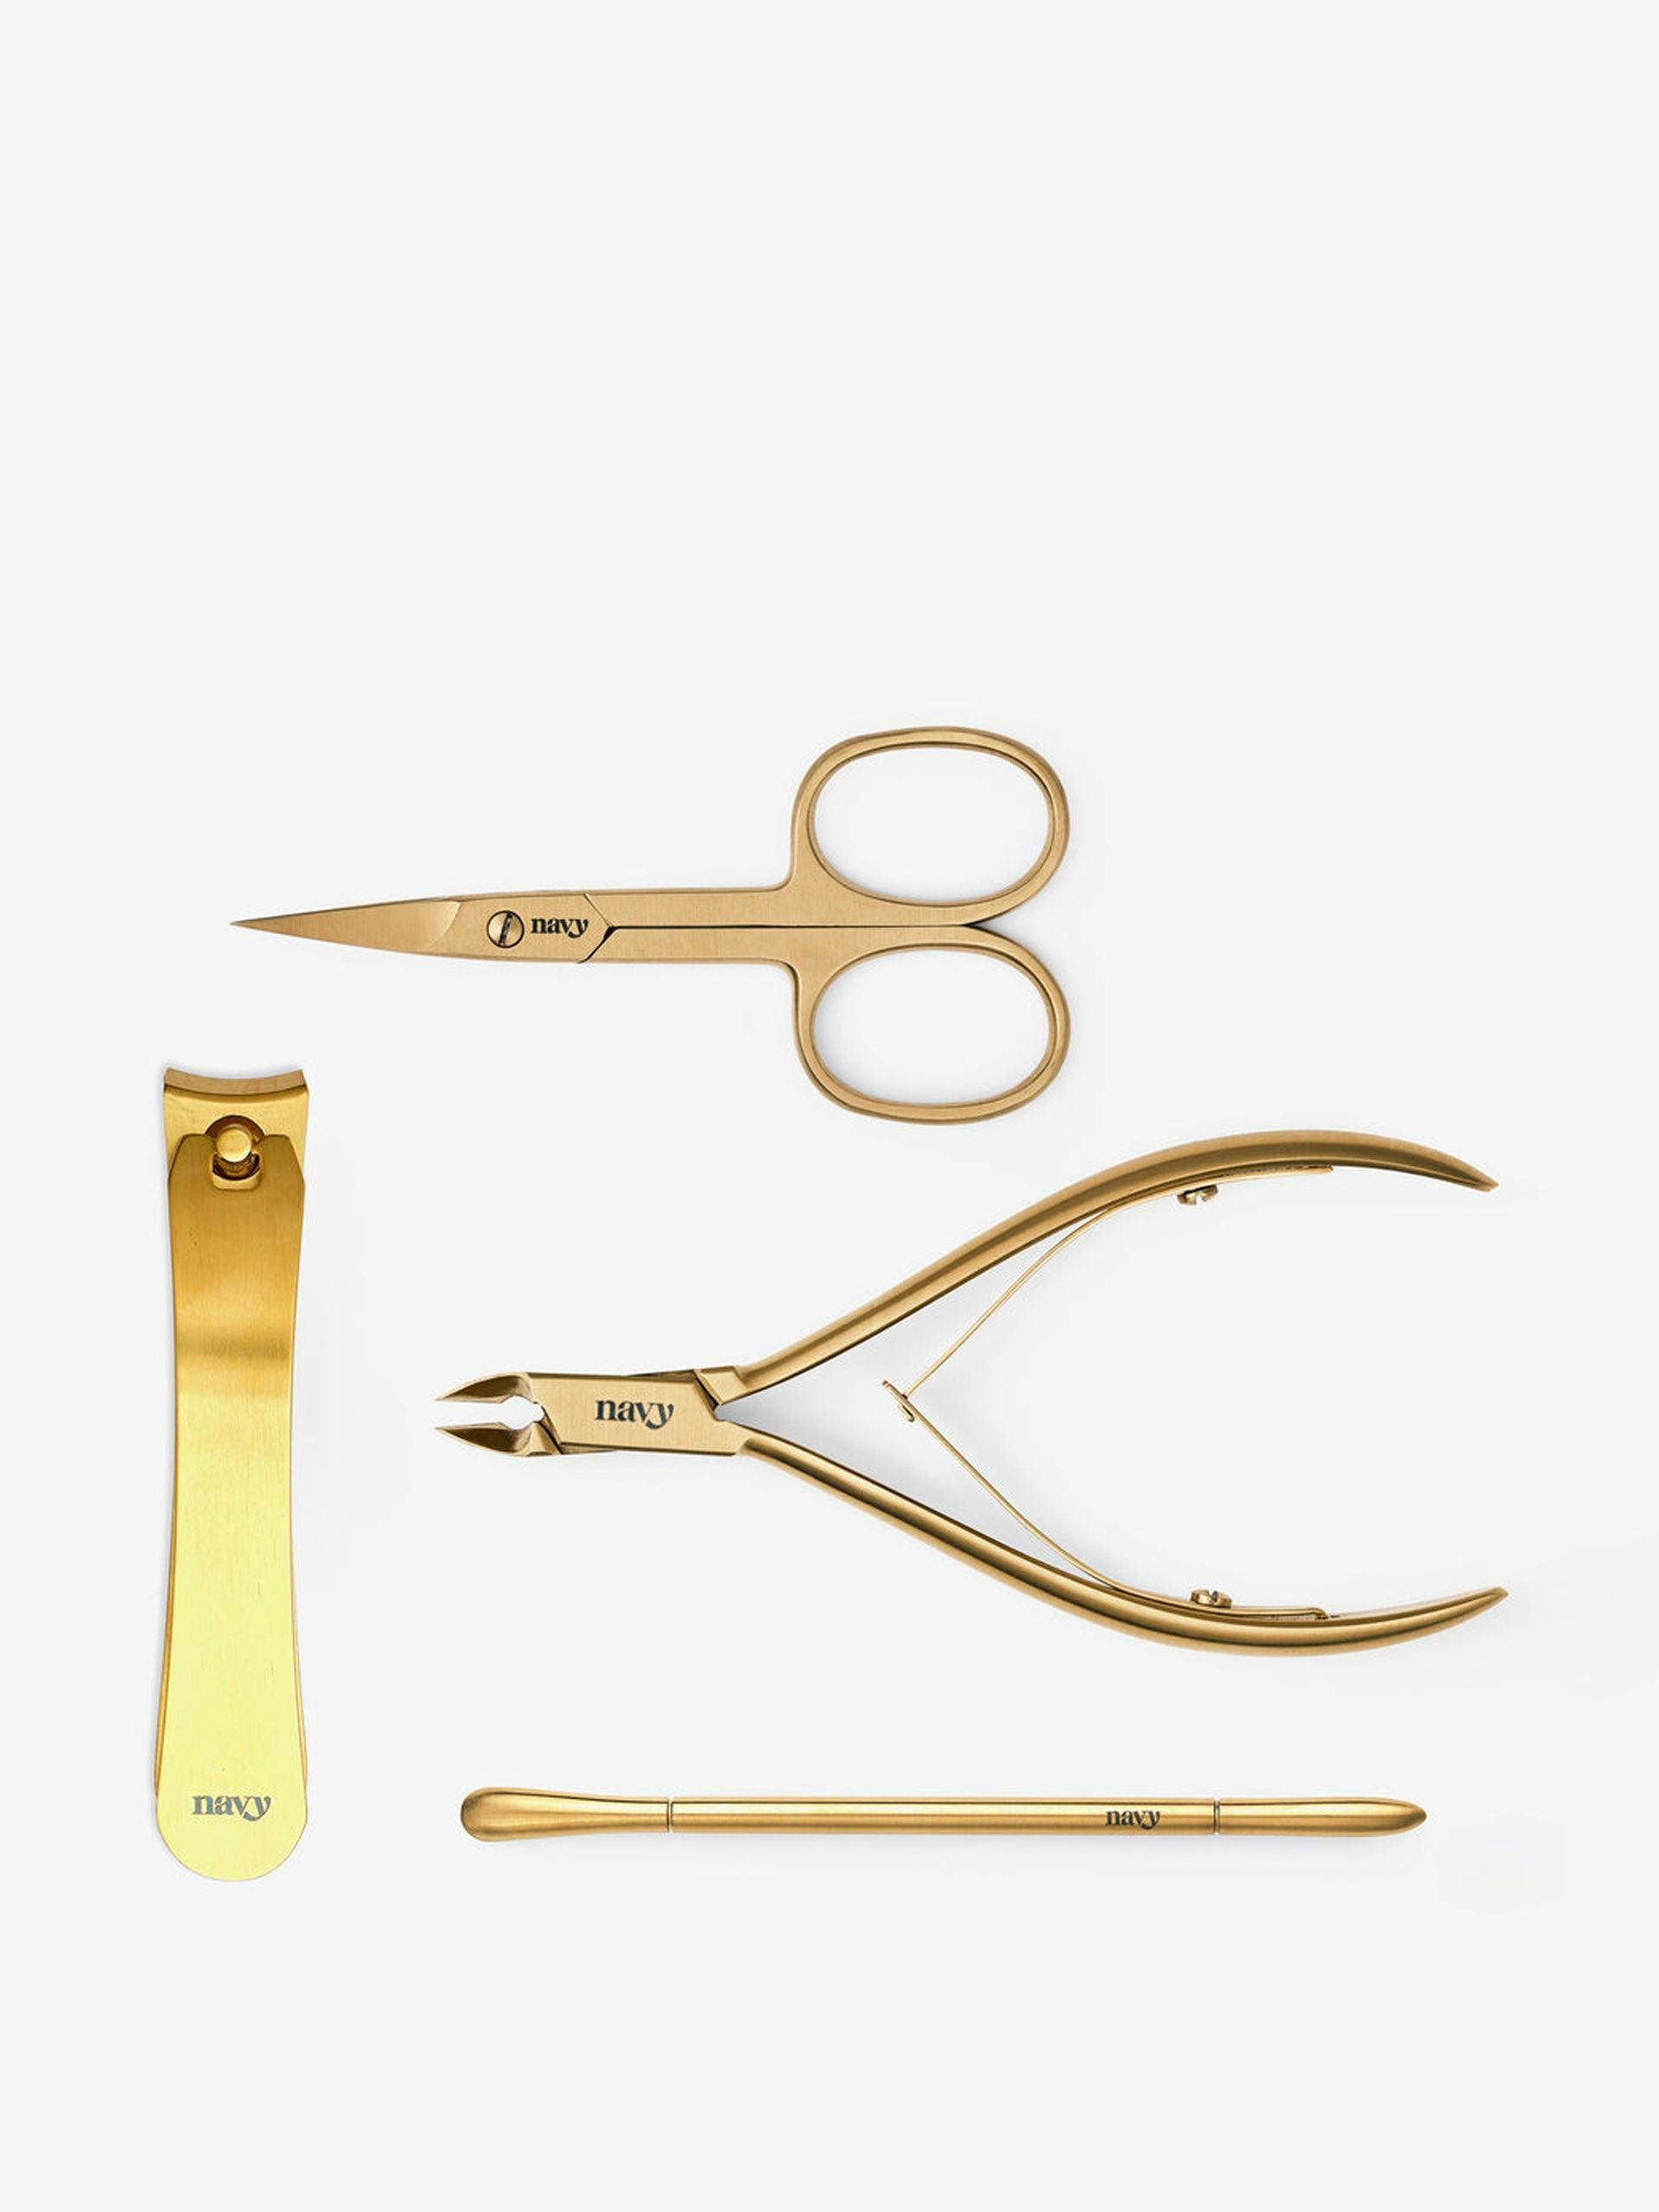 Basic nail kit